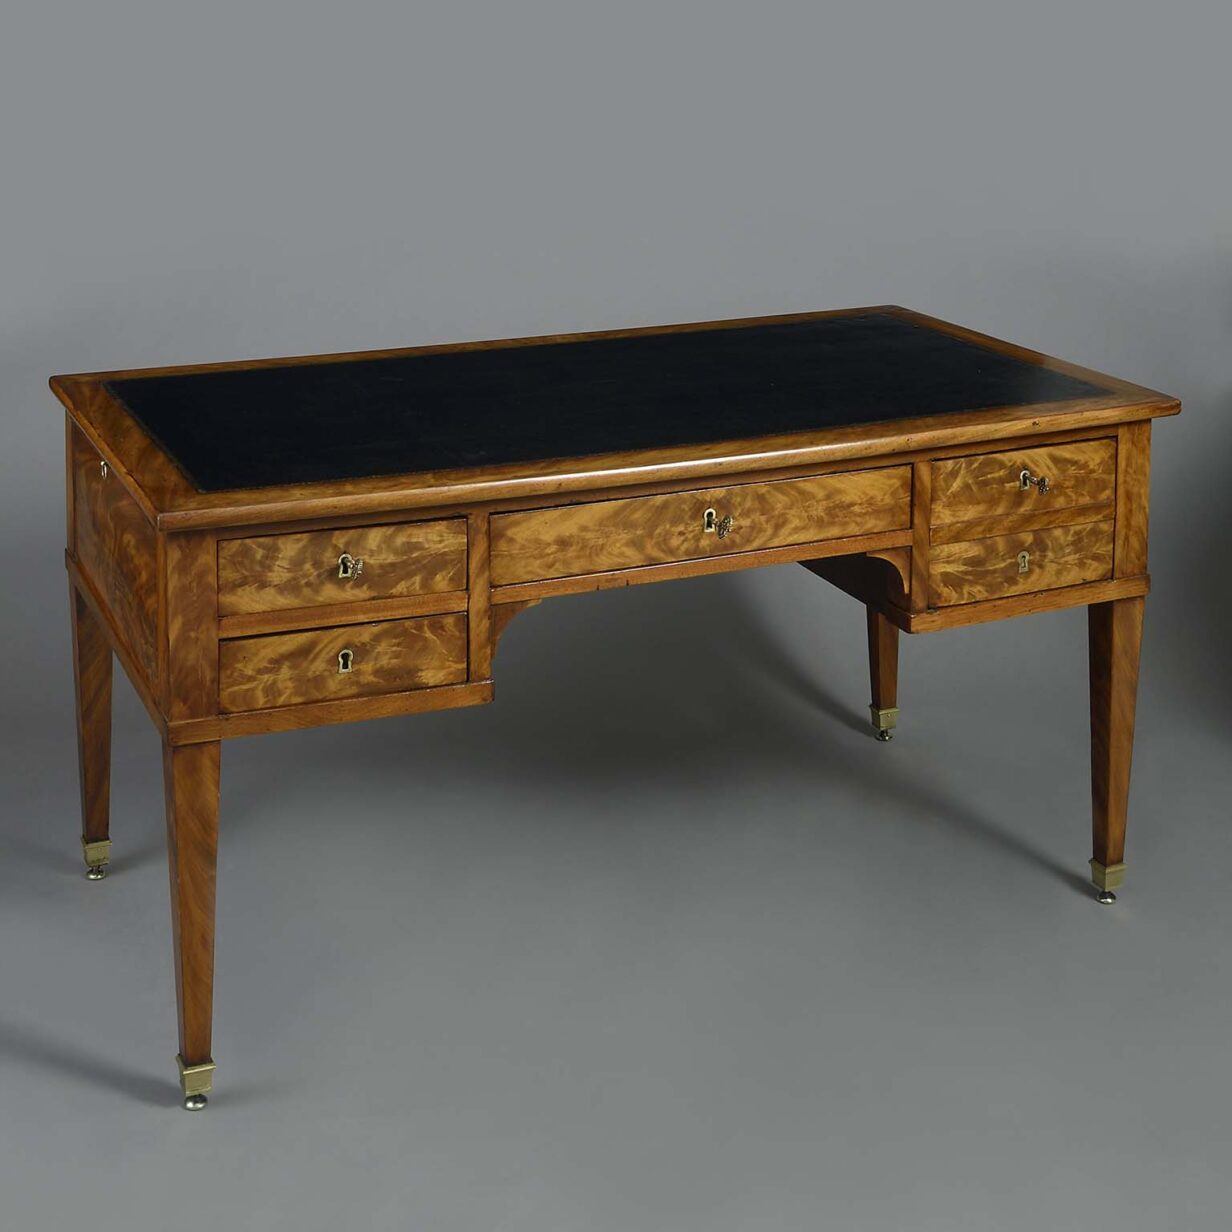 Late 18th century louis xvi period mahogany bureau plat